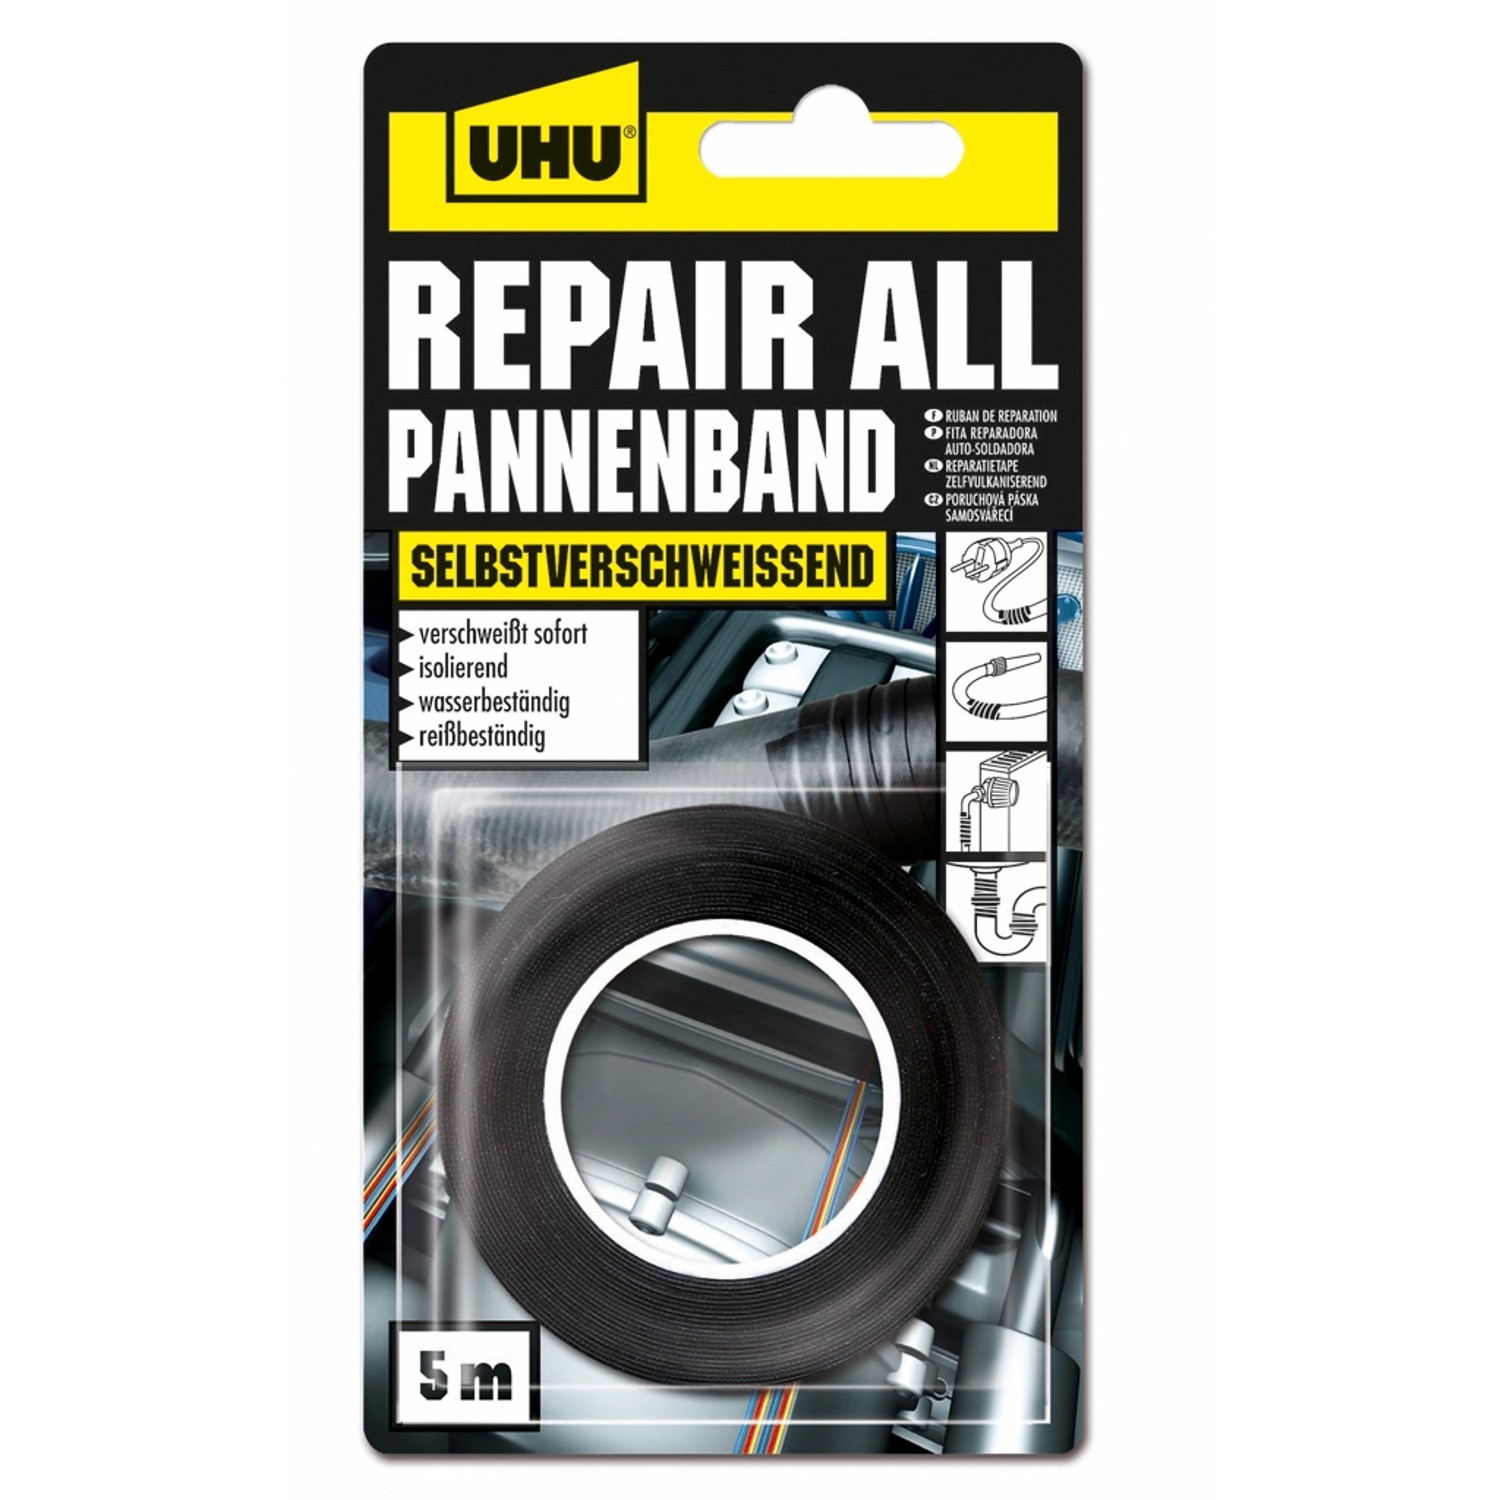 UHU Repair All Pannenband 5m